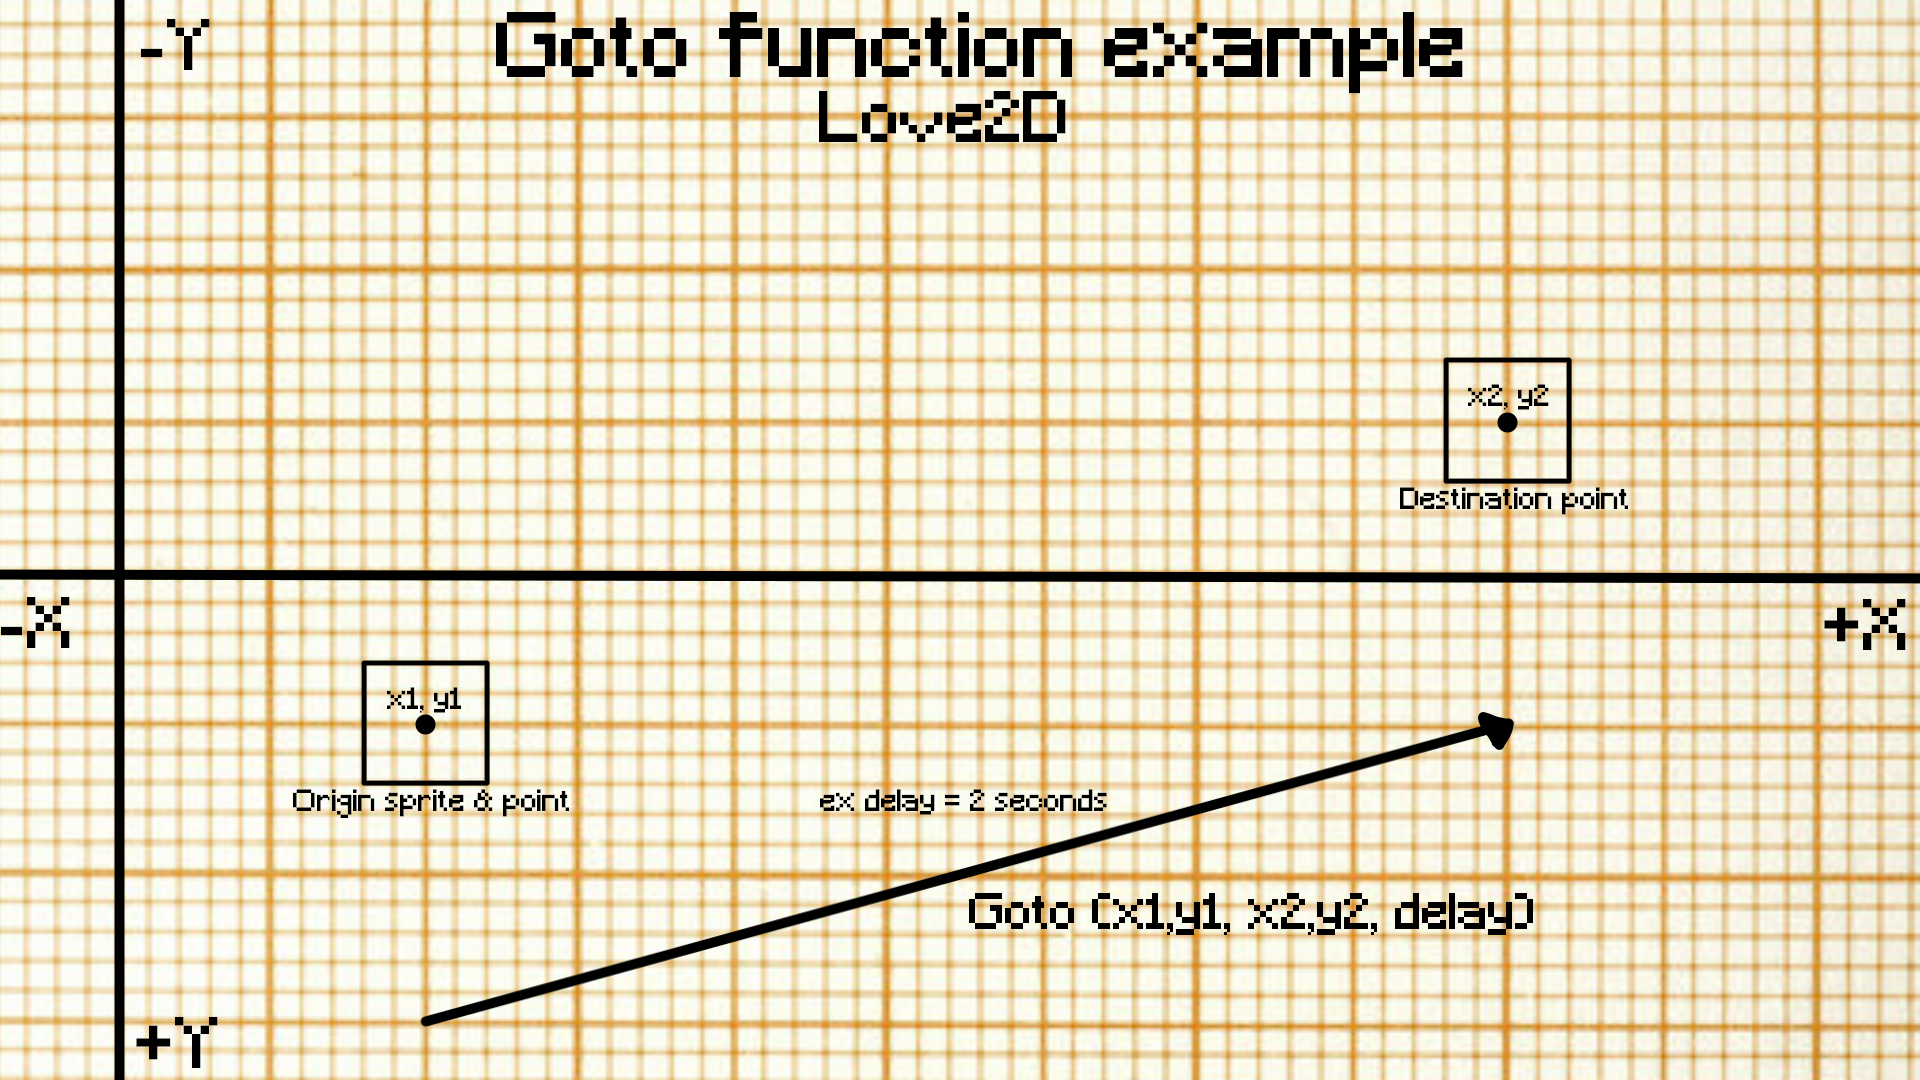 vector plane describing Goto(x1,y1, x2,y2, delay) function with a vector